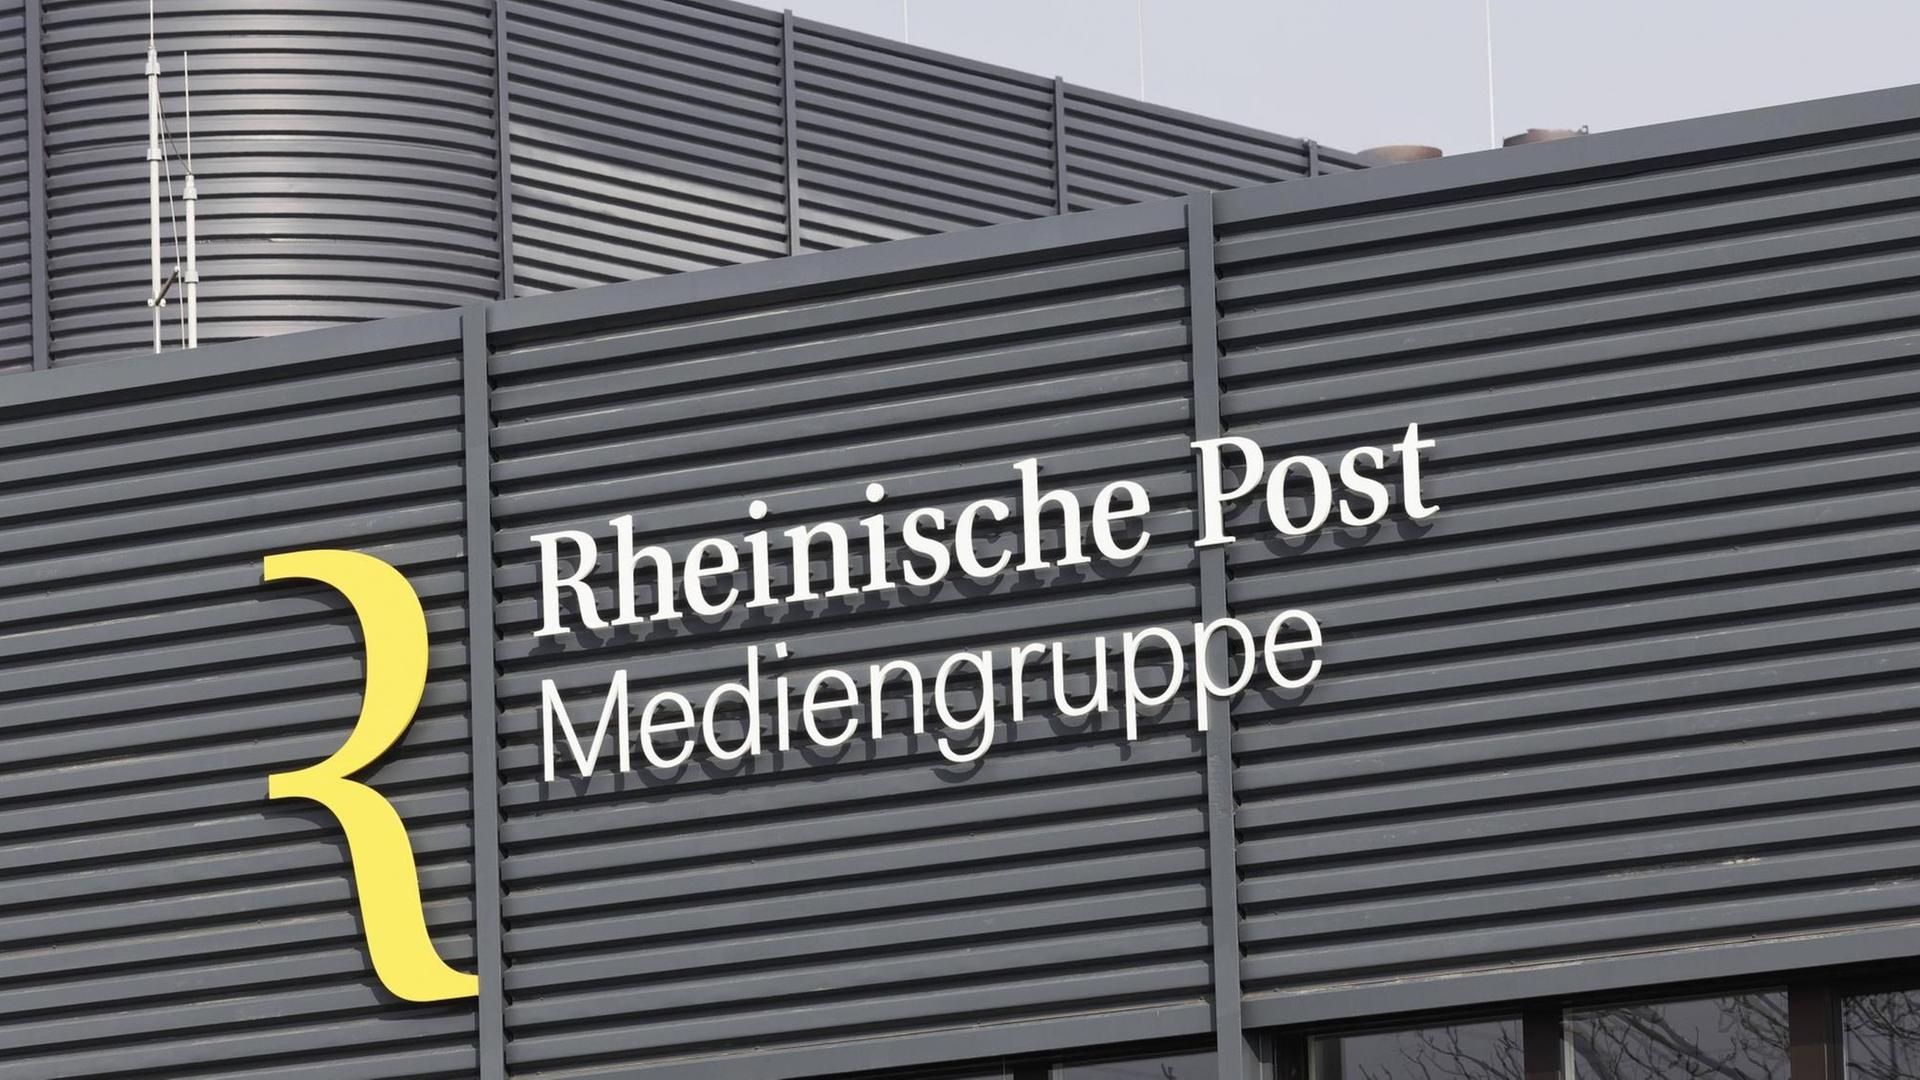 Das Logo der "Rheinische Post Mediengruppe" an einem Gebäude